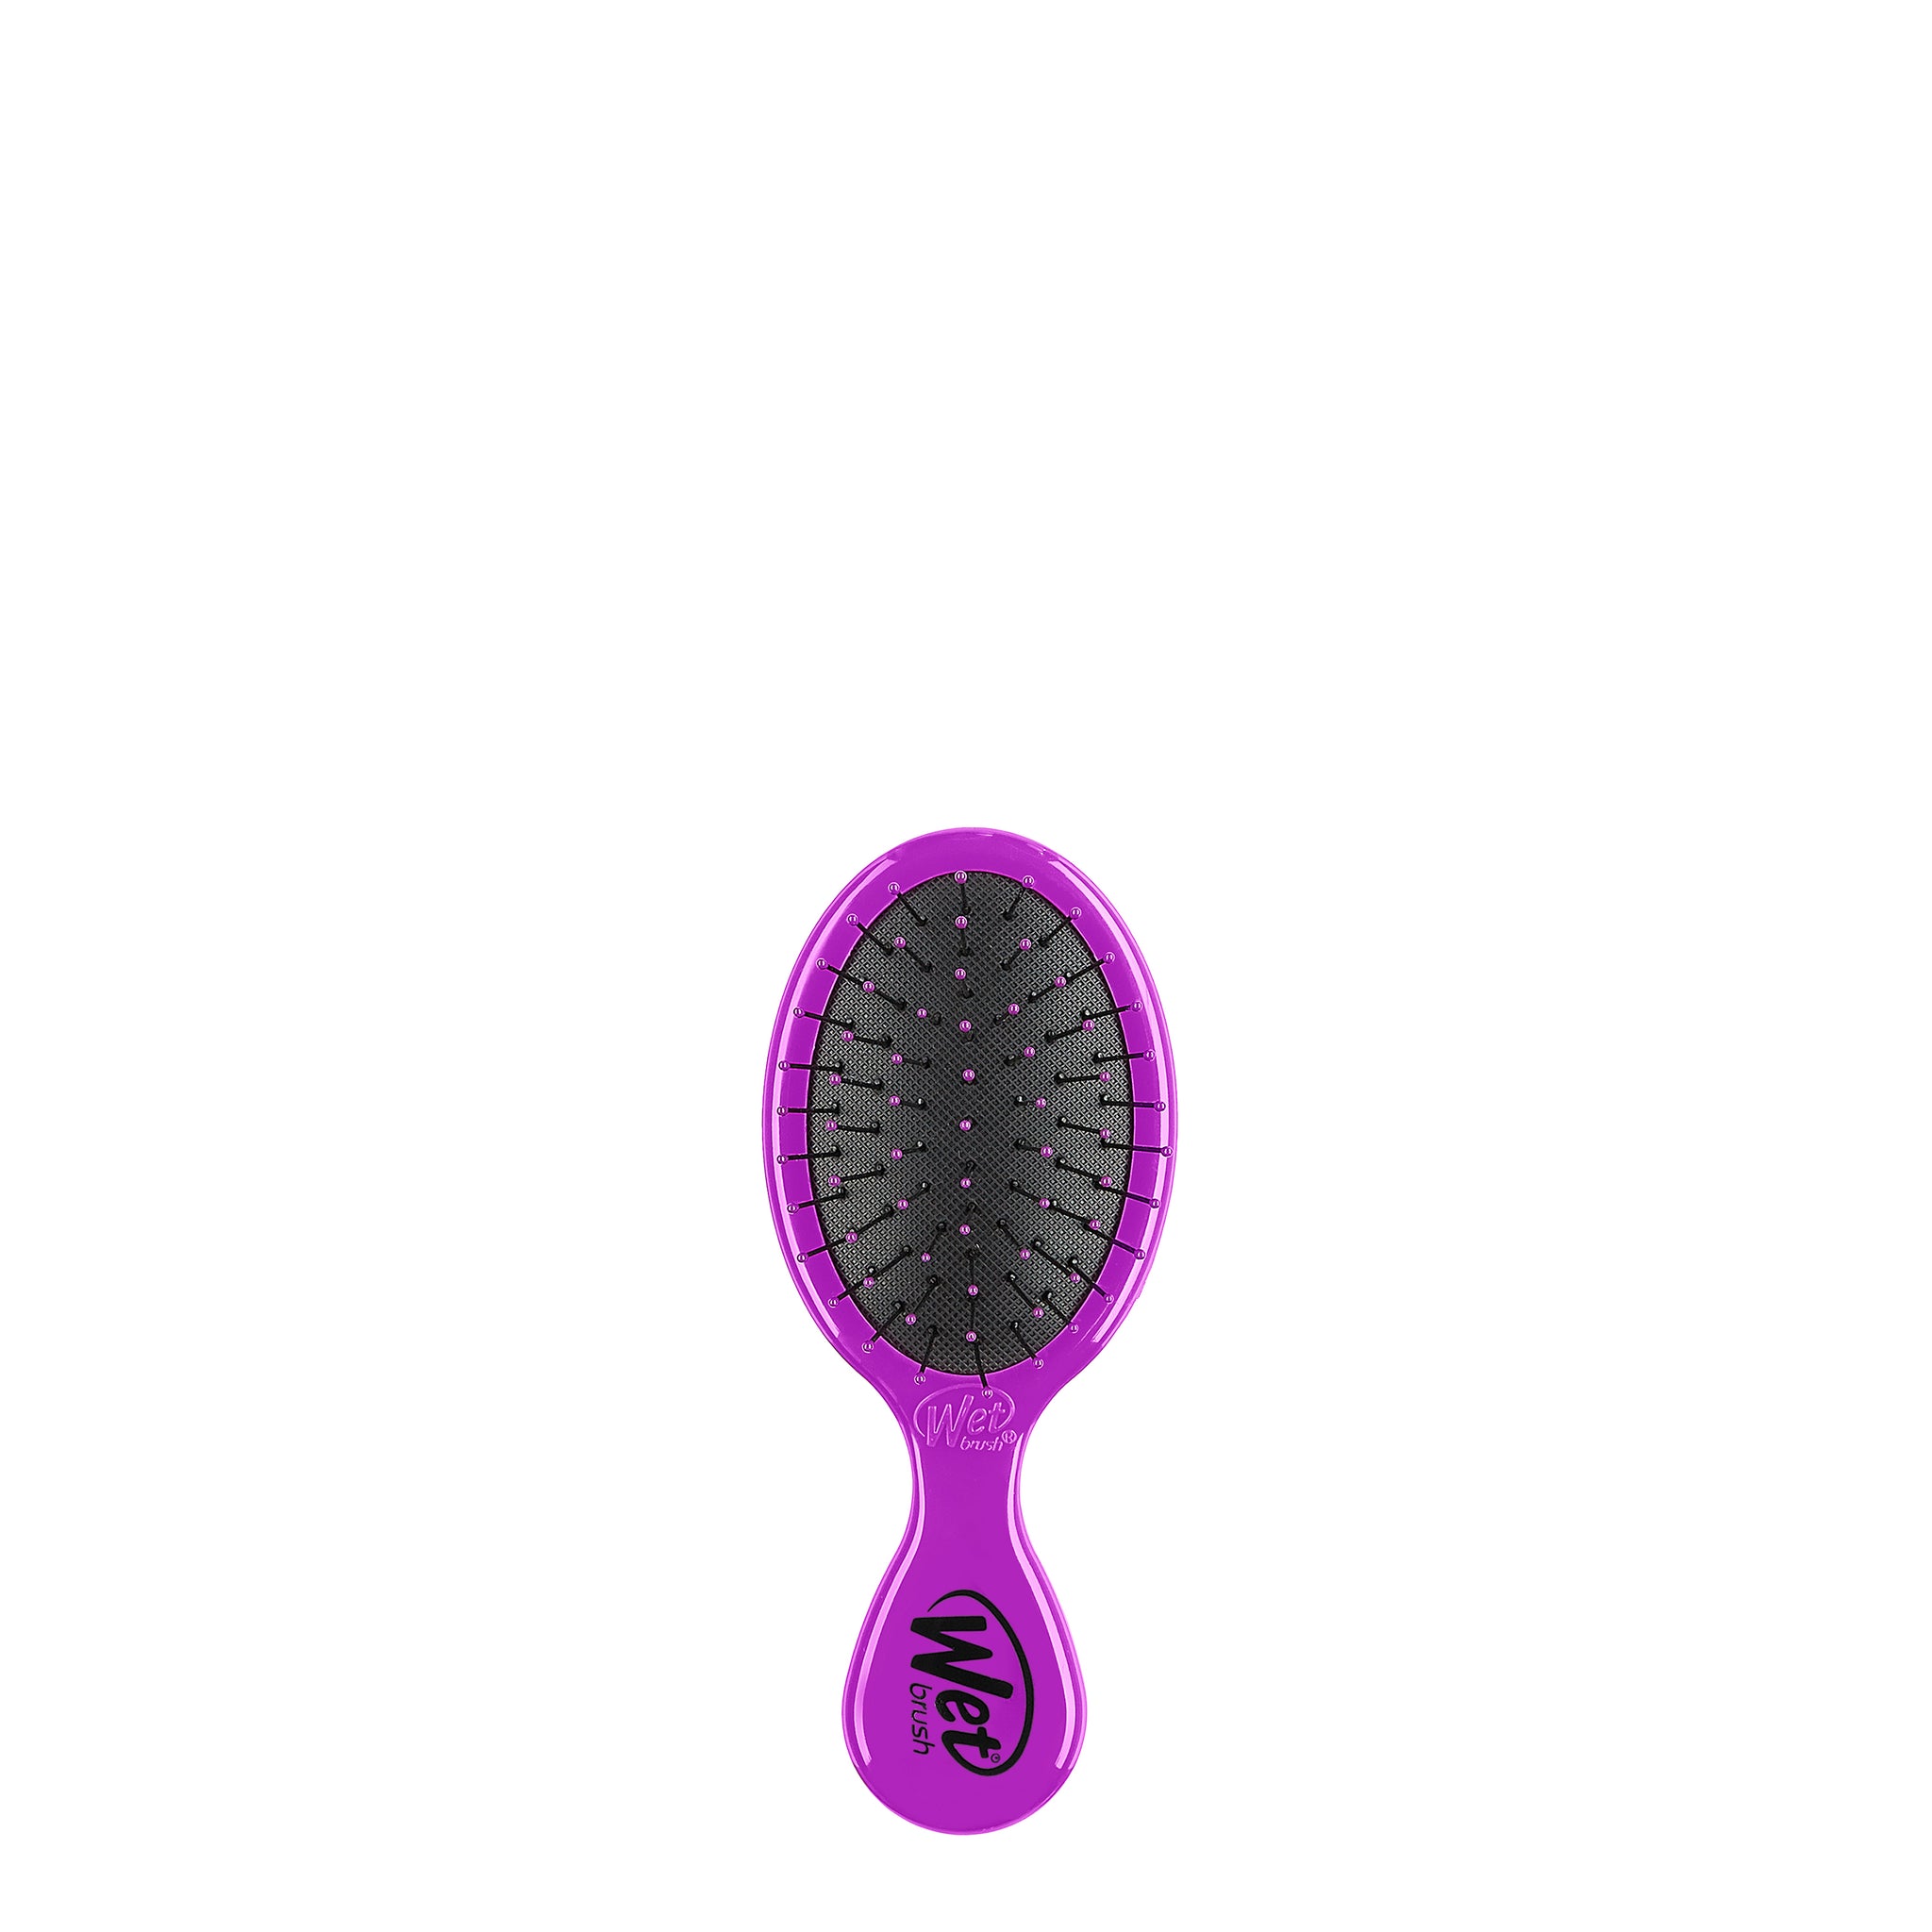 Wet Brush Mini Detangler Hair Brush with IntelliFlex Bristles